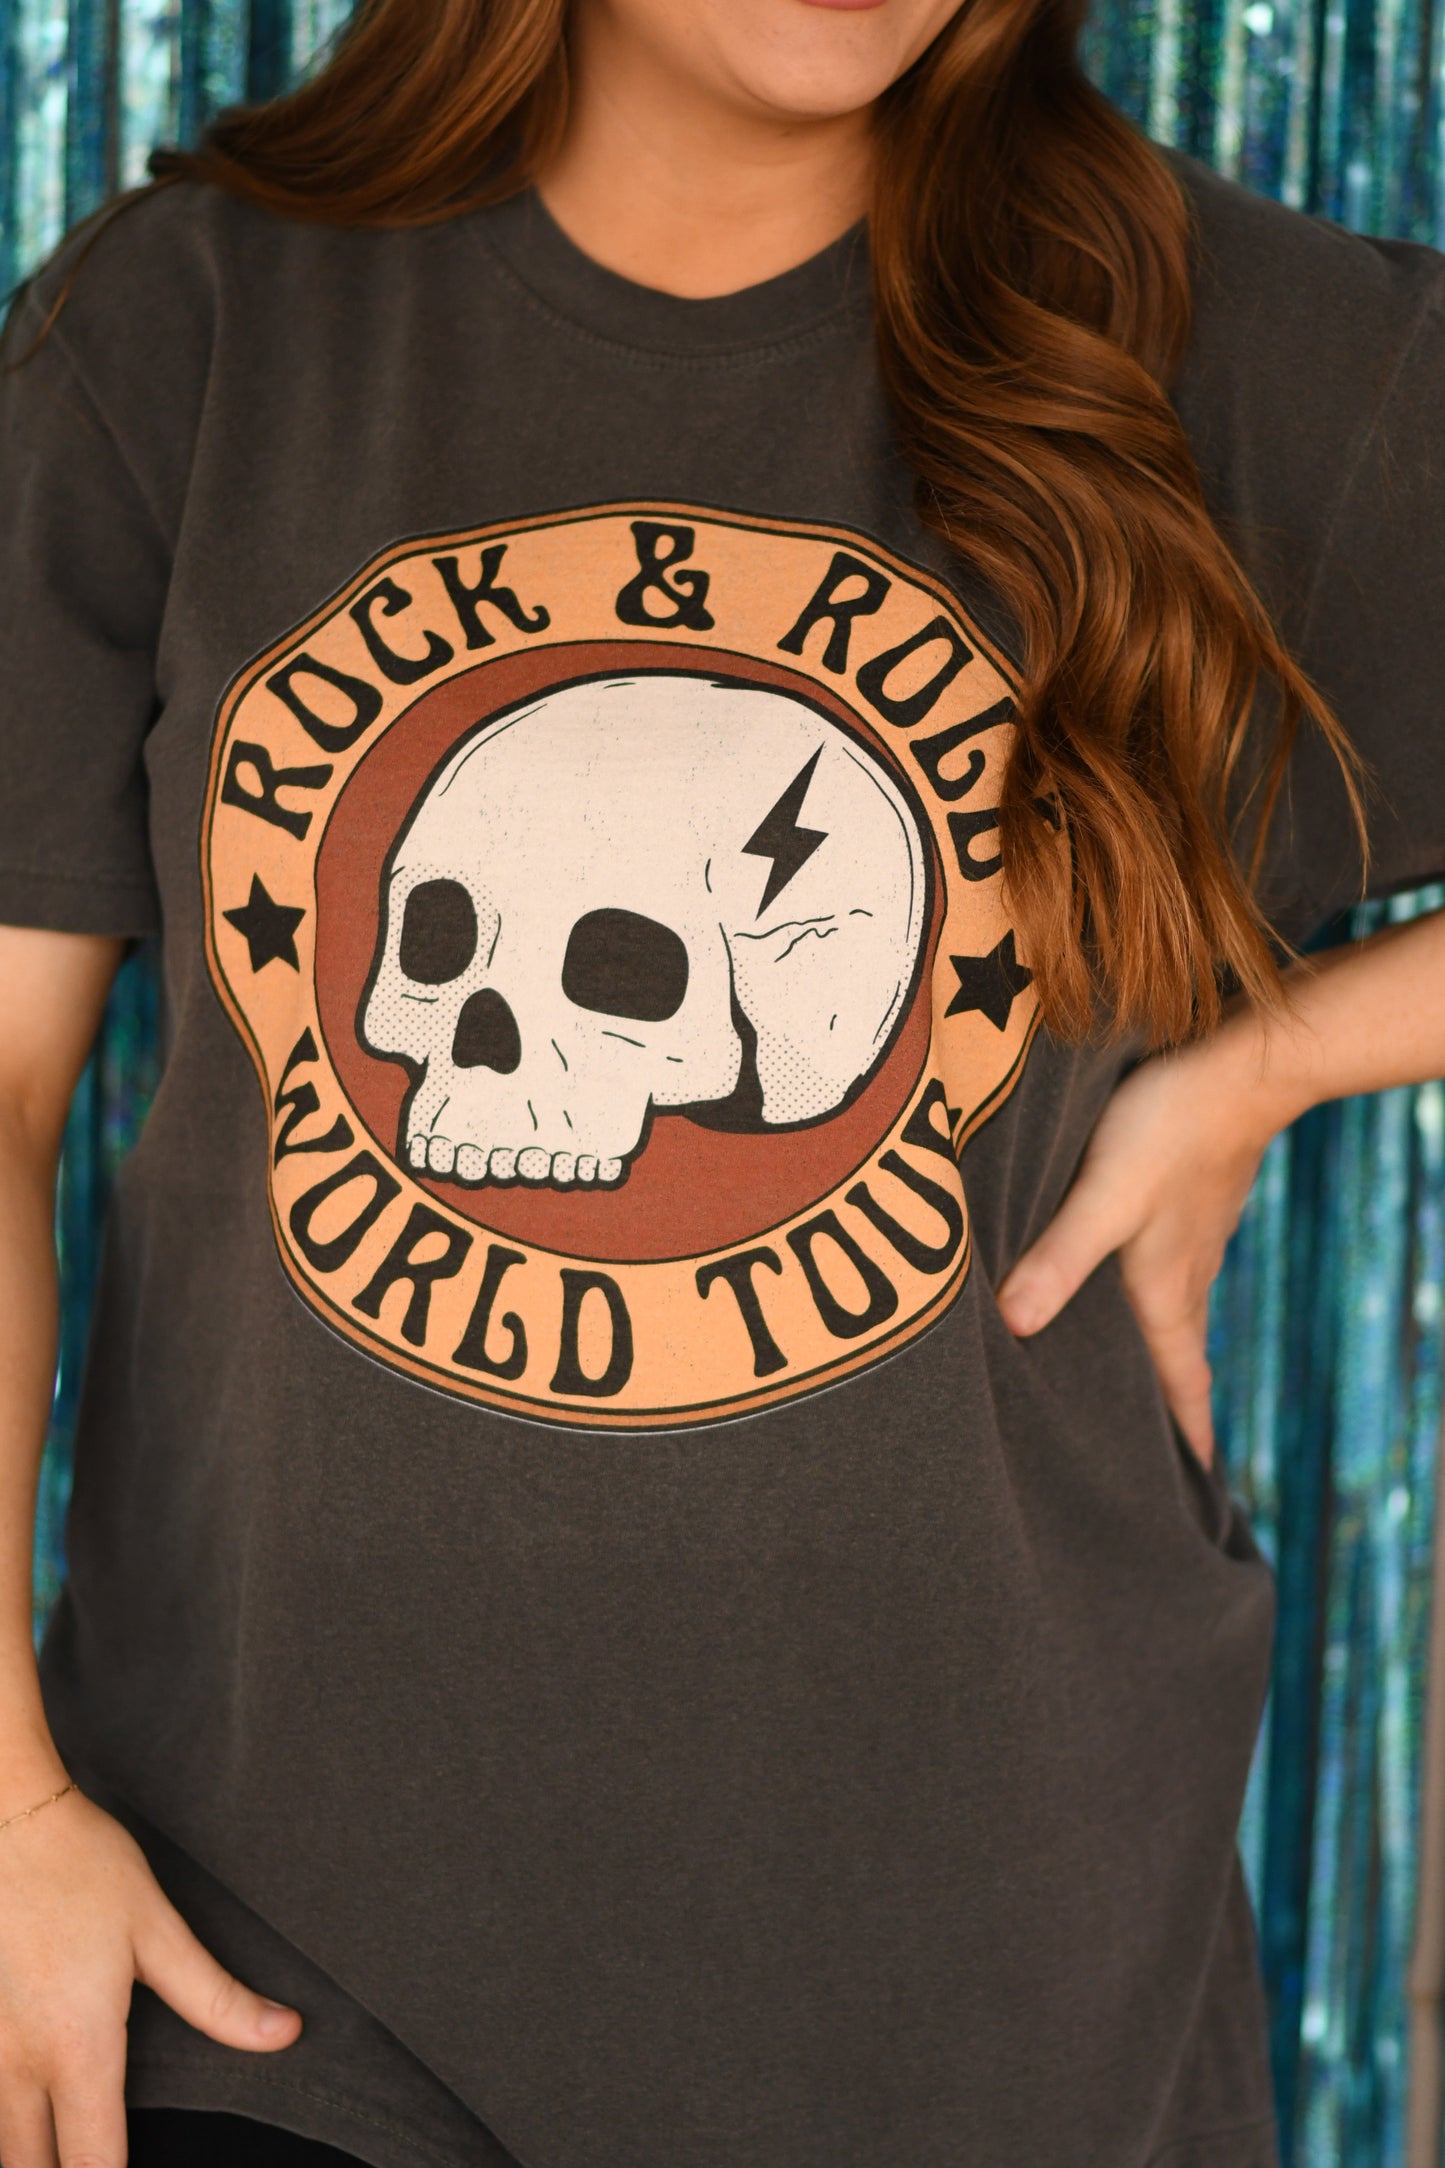 Rock & Roll World Tour Tee / T-Shirt Dress